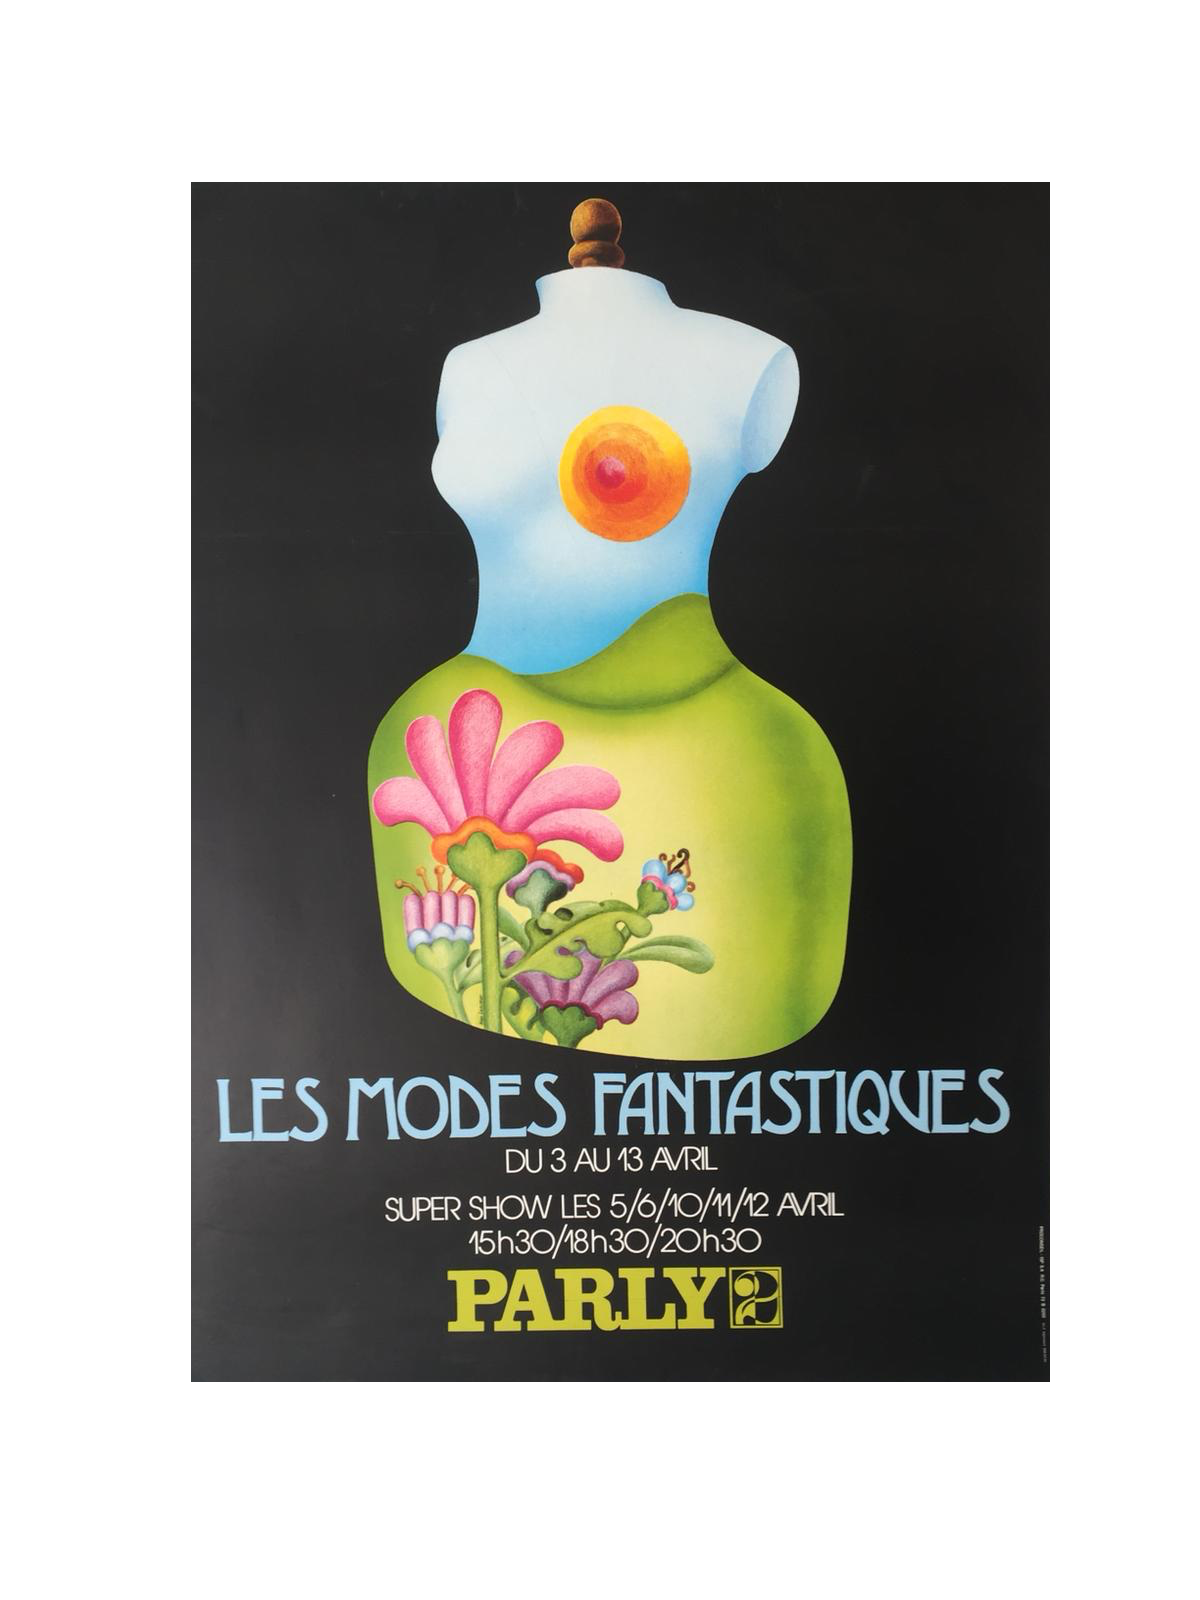 Les Modes Fantastiques by Lesueur